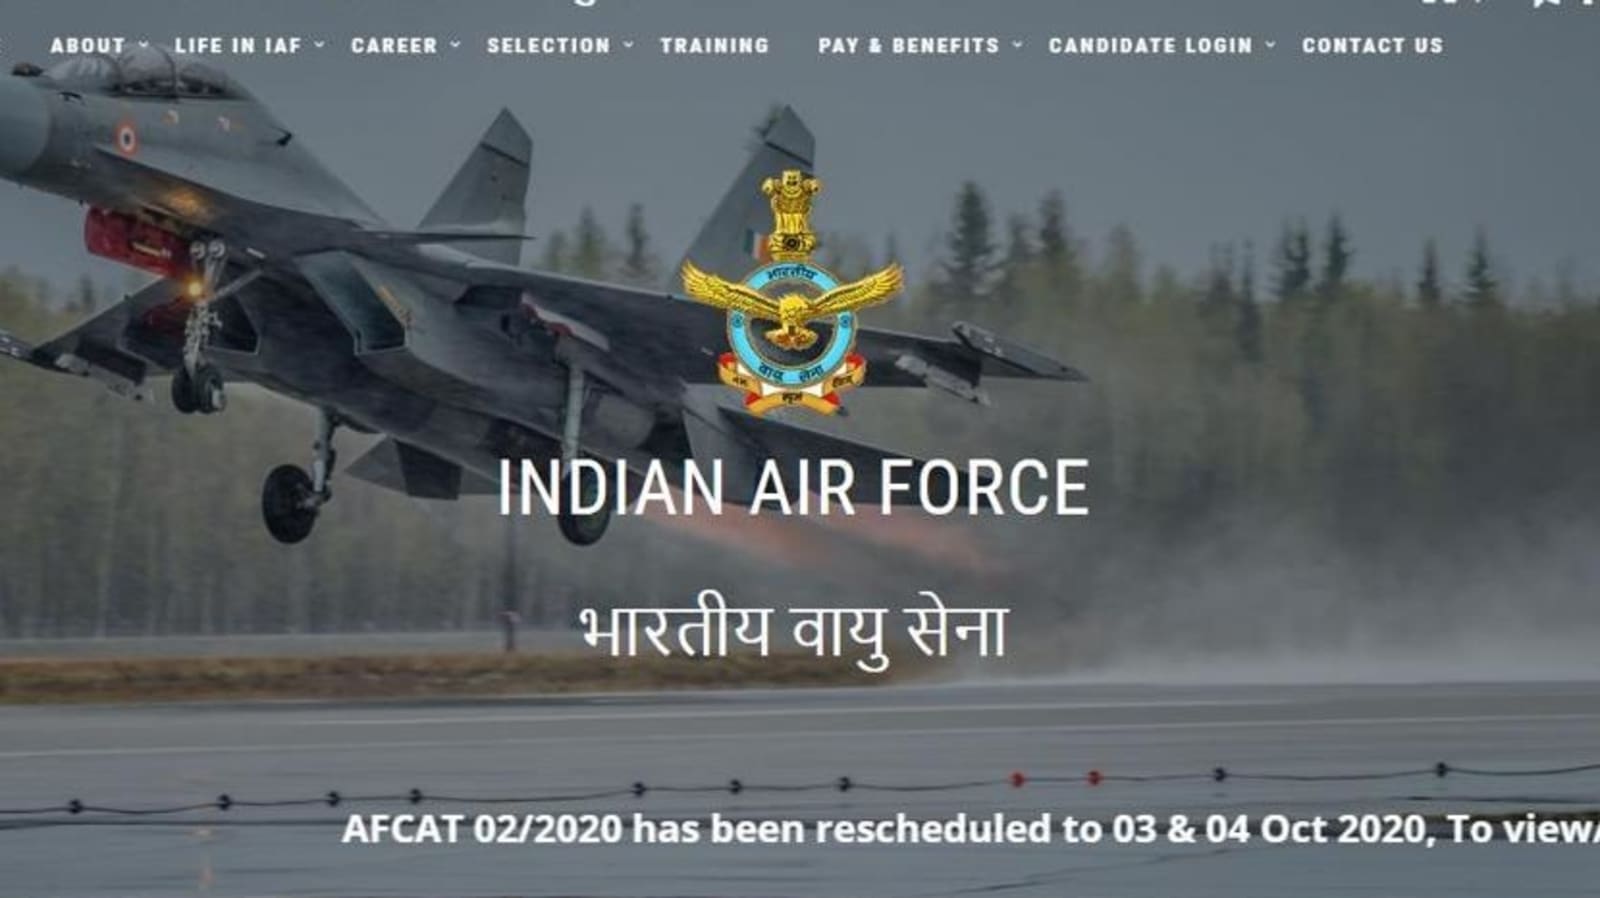 IAF AFCAT 2021: Registration for 317 posts begins on December 1, details here